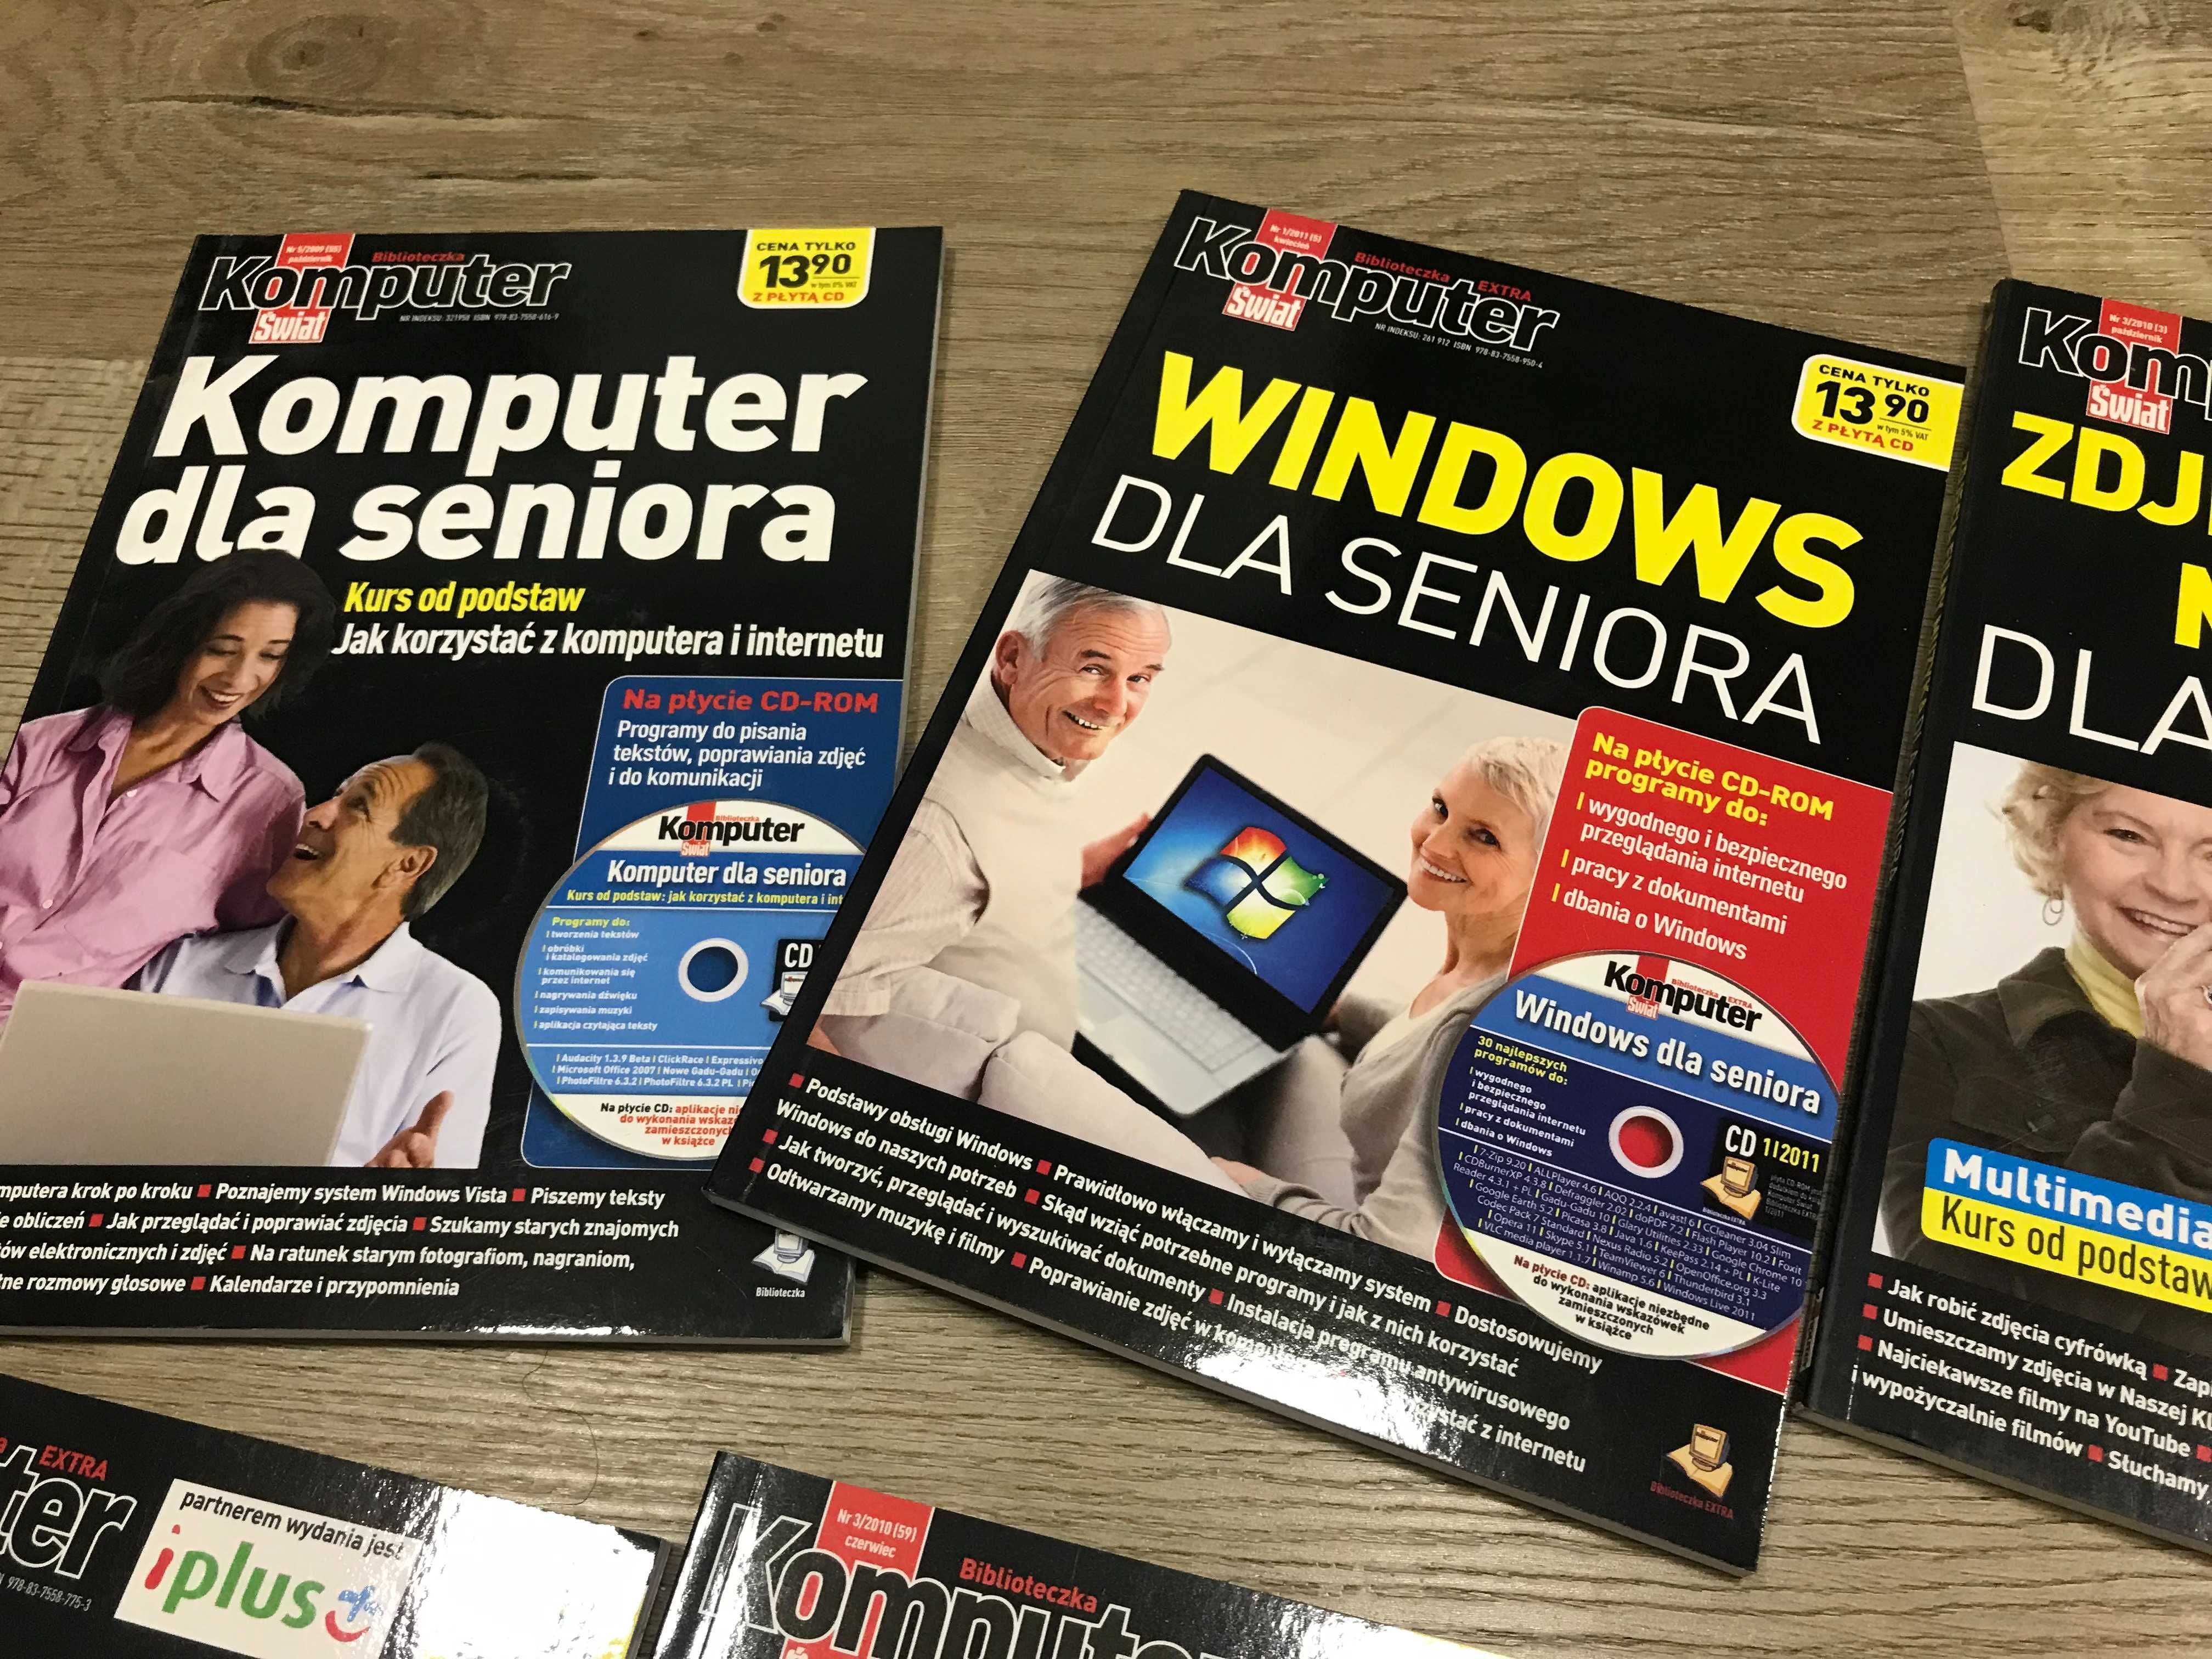 Zestaw do nauki obsługi komputera dla seniora z CD, wartości 120zł